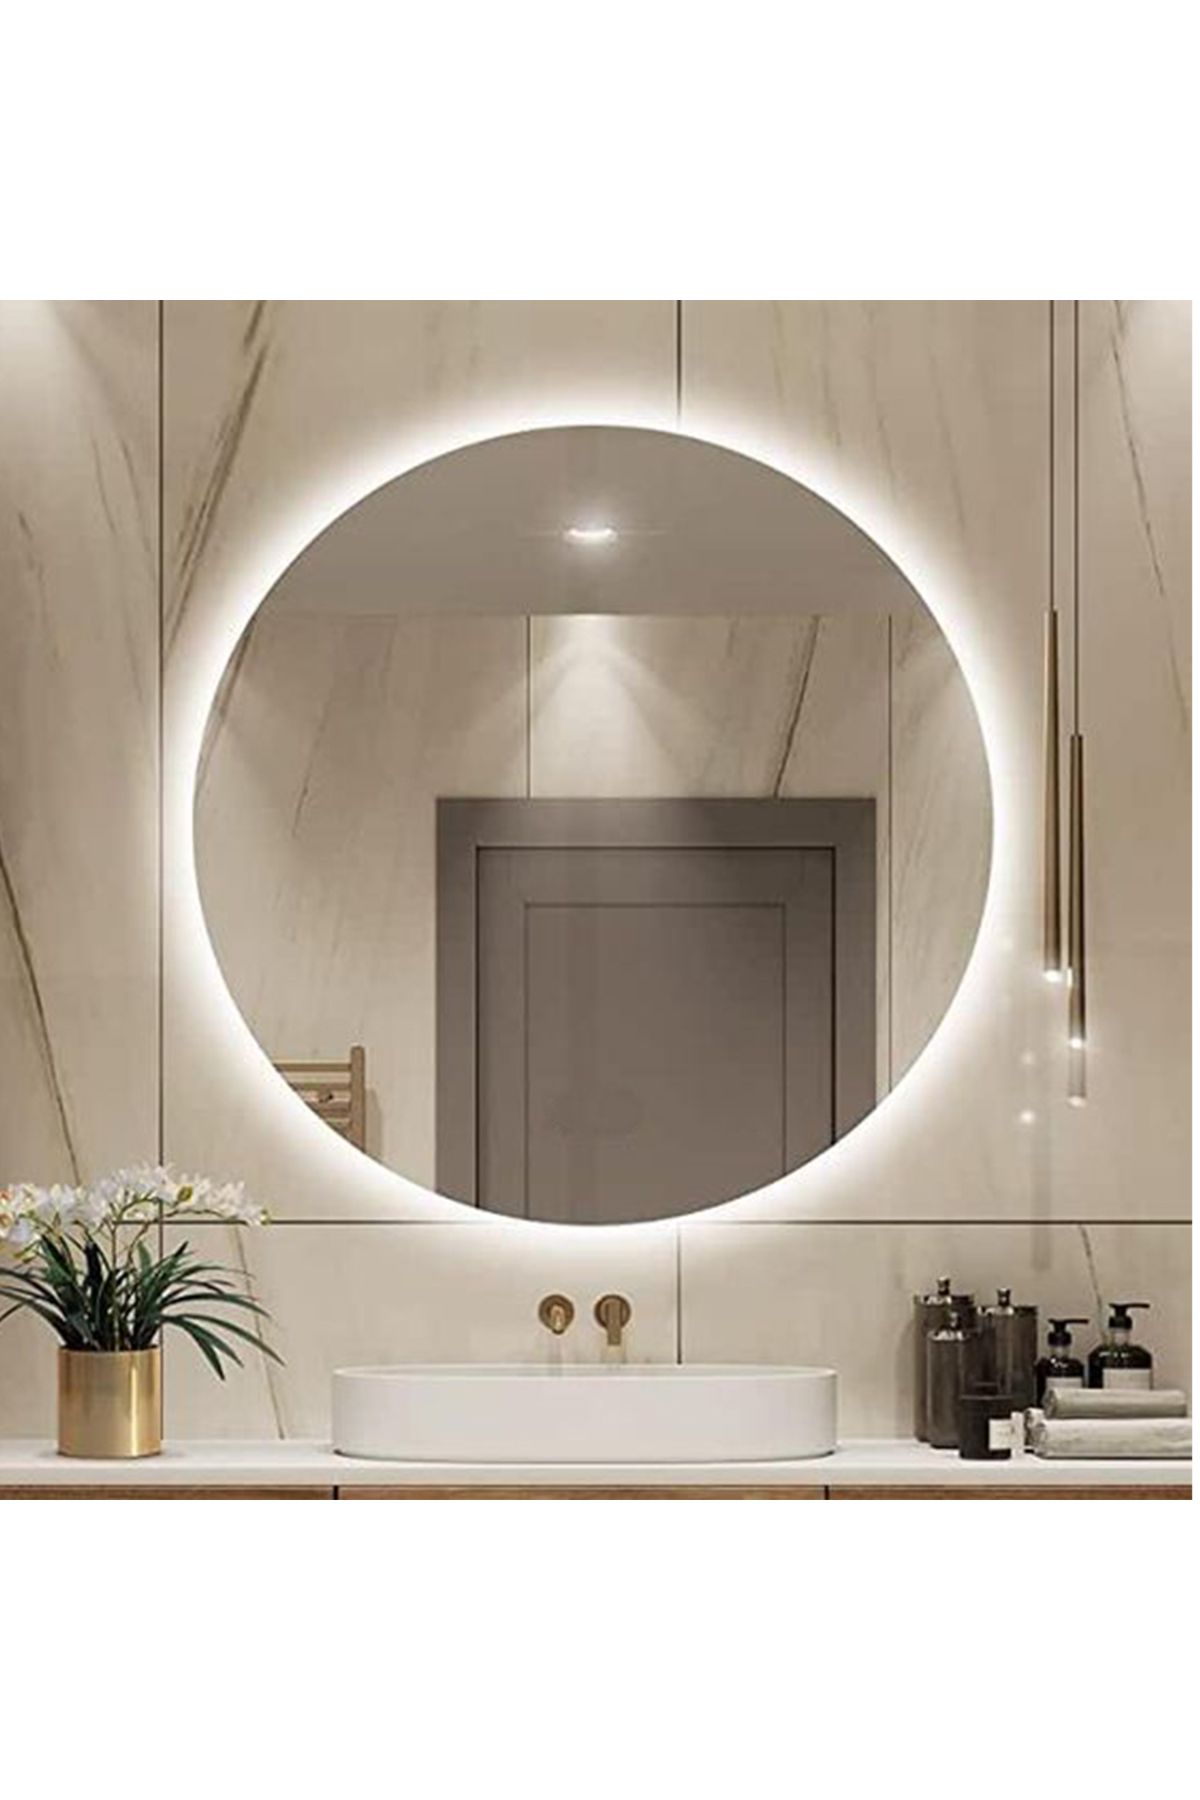 BUGUSAN 70 cm Ledli Ayna Banyo Aynası Yuvarlak Ayna Dekoratif Ayna Işıklı Salon Aynası